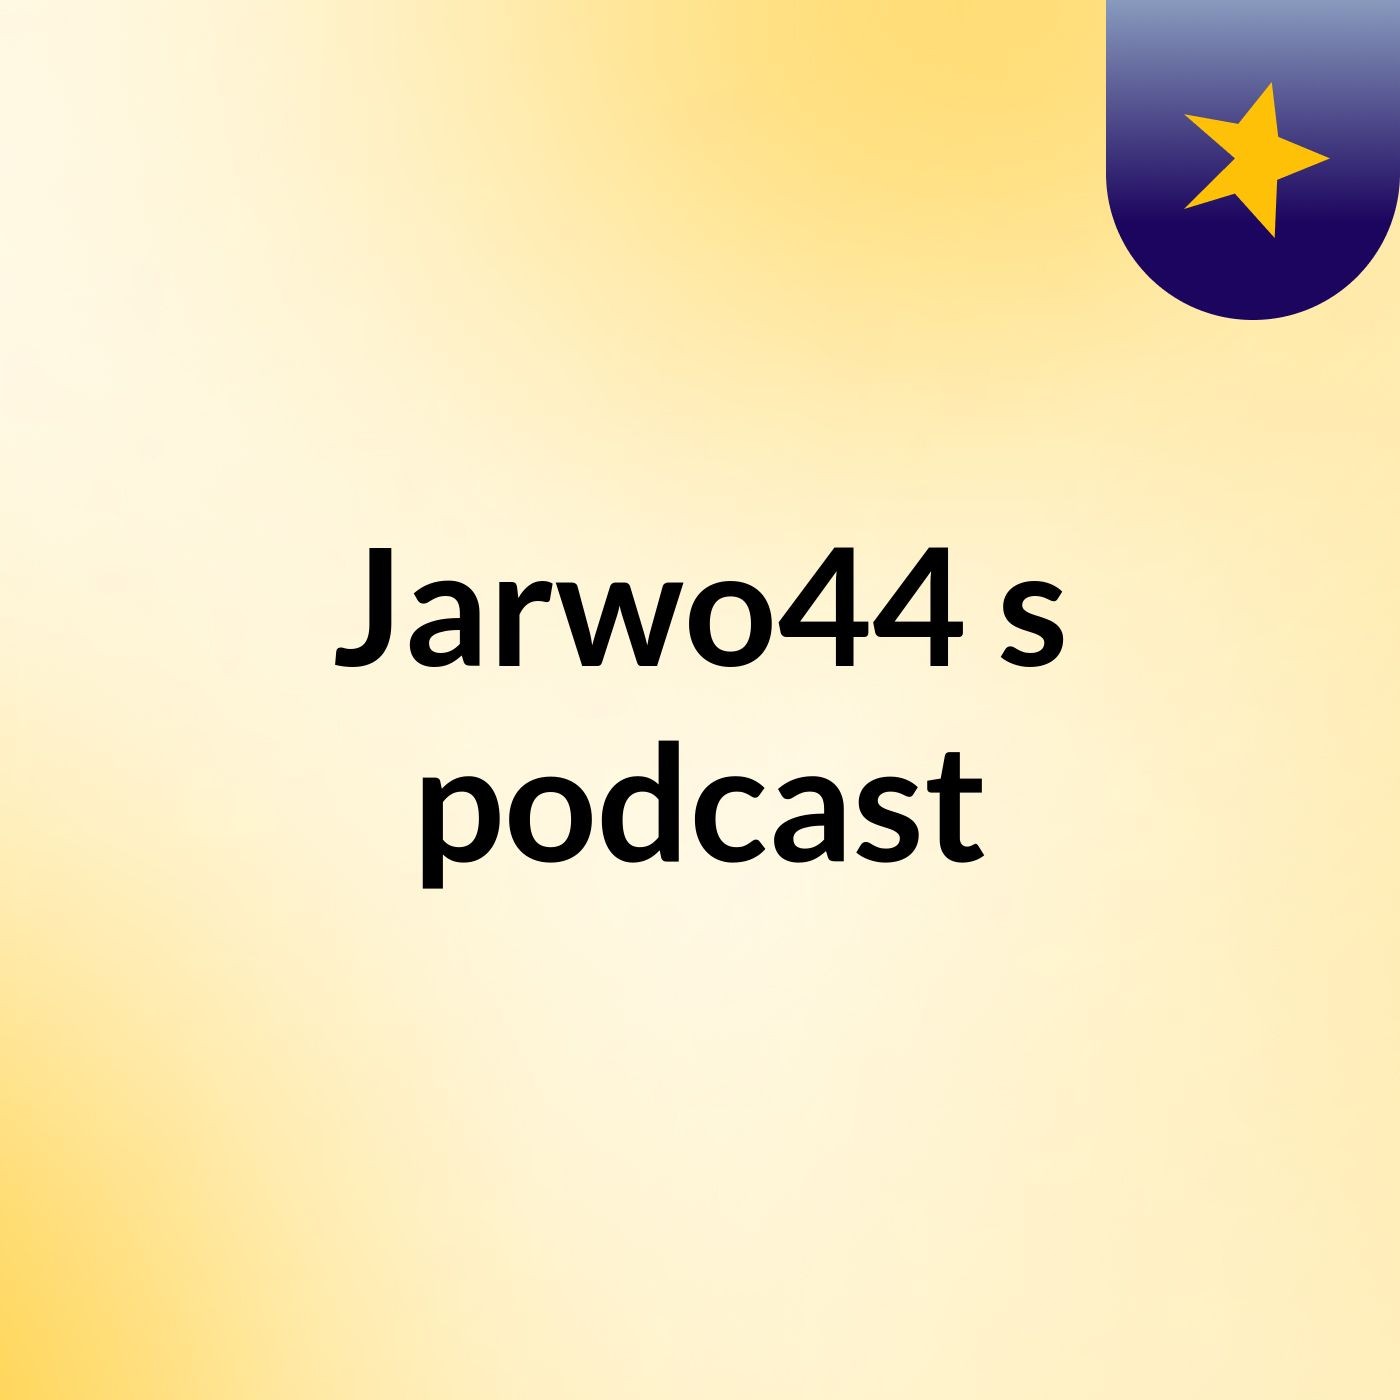 Jarwo44's podcast